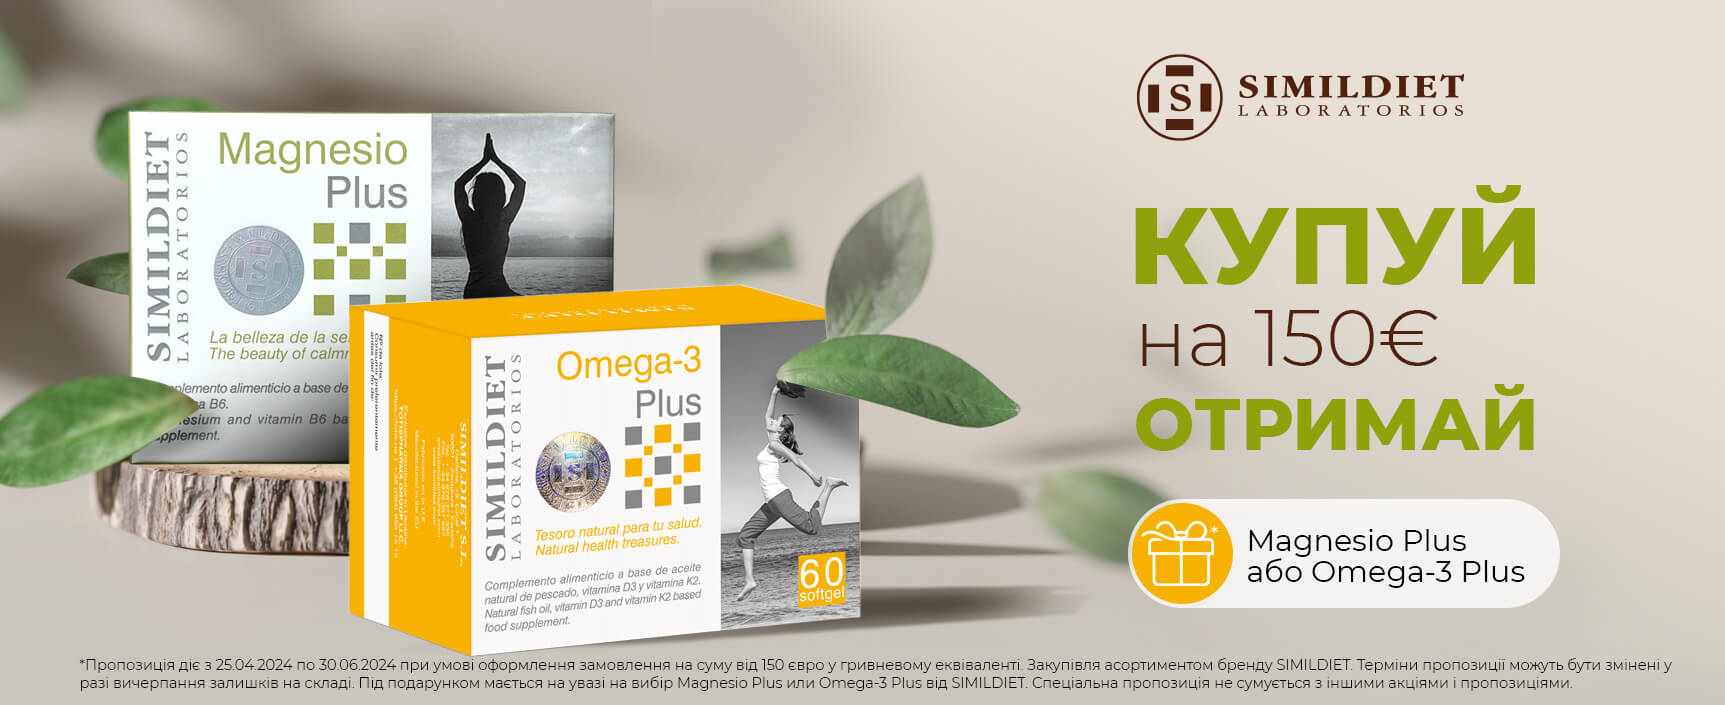 Подарунок Magnesio або Omega-3 Plus 60 cap при покупці асортименту Simildiet міксом на суму від 150 євро